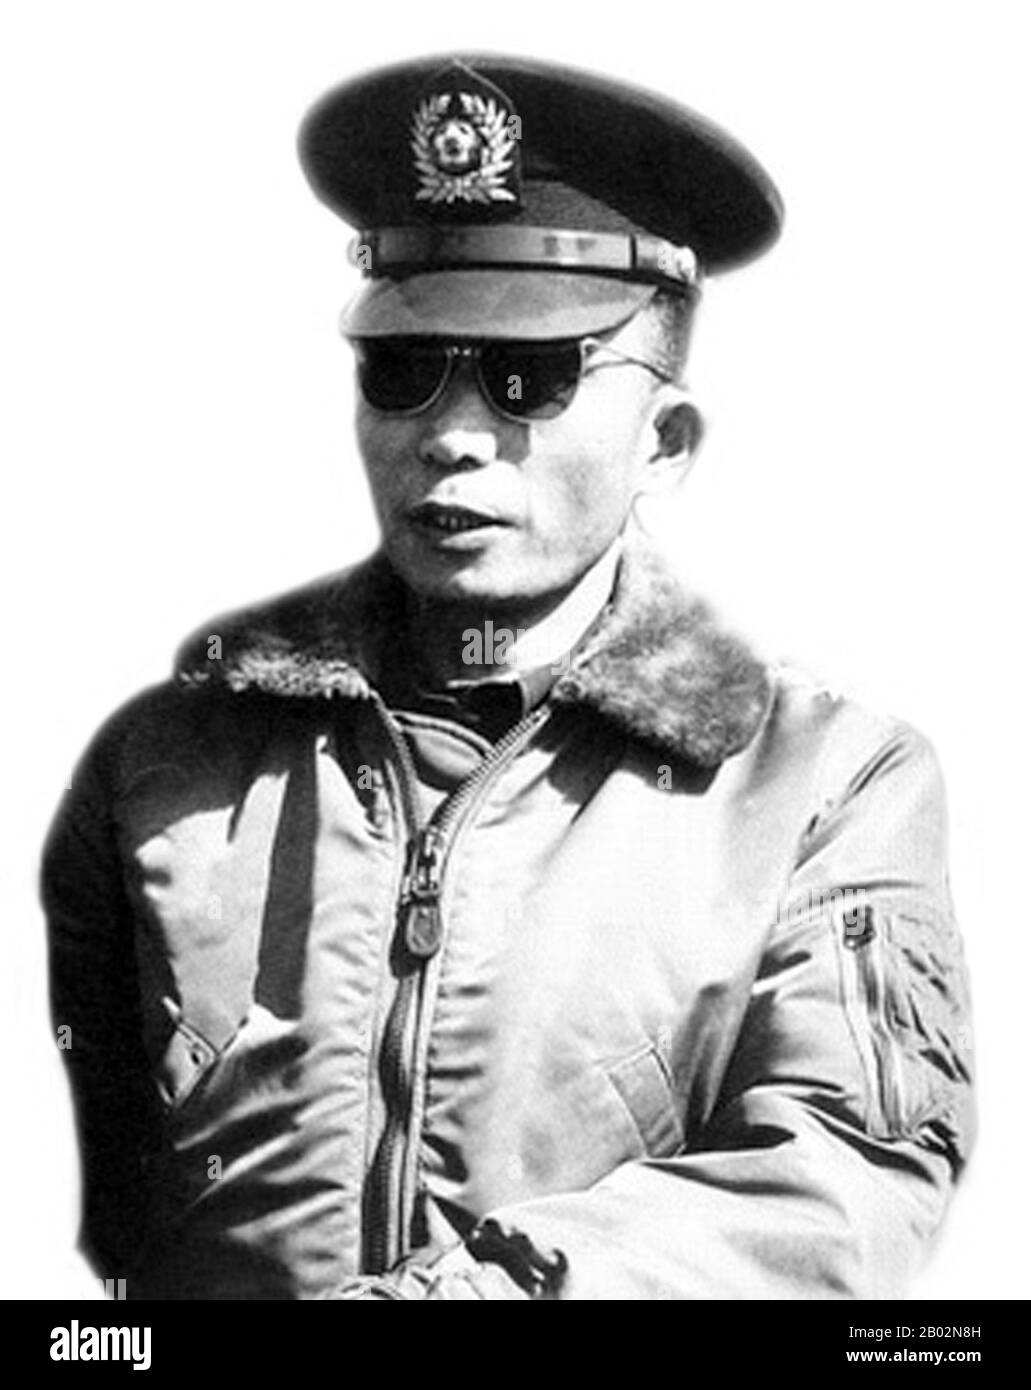 Park Chung-hee (14. November 1917 - 26. Oktober 1979) war ein südkoreanischer präsident und Militärgeneral, der Südkorea von 1961 bis zu seiner Ermordung 1979 führte. Park ergriff die Macht durch einen Militärputsch, der 1961 die zweite Republik Koreas überwarf und als Militär-Strongman an der Spitze des Obersten Rates für den nationalen Wiederaufbau bis zu seiner Wahl und Amtseinführung als Präsident der Dritten Republik Koreas 1963 regierte. 1972 erklärte Park das Kriegsrecht und nahm die Verfassung in ein hochautoritäres Dokument auf, das die Koreanische Vierte Republik einleitete. Nachher Stockfoto